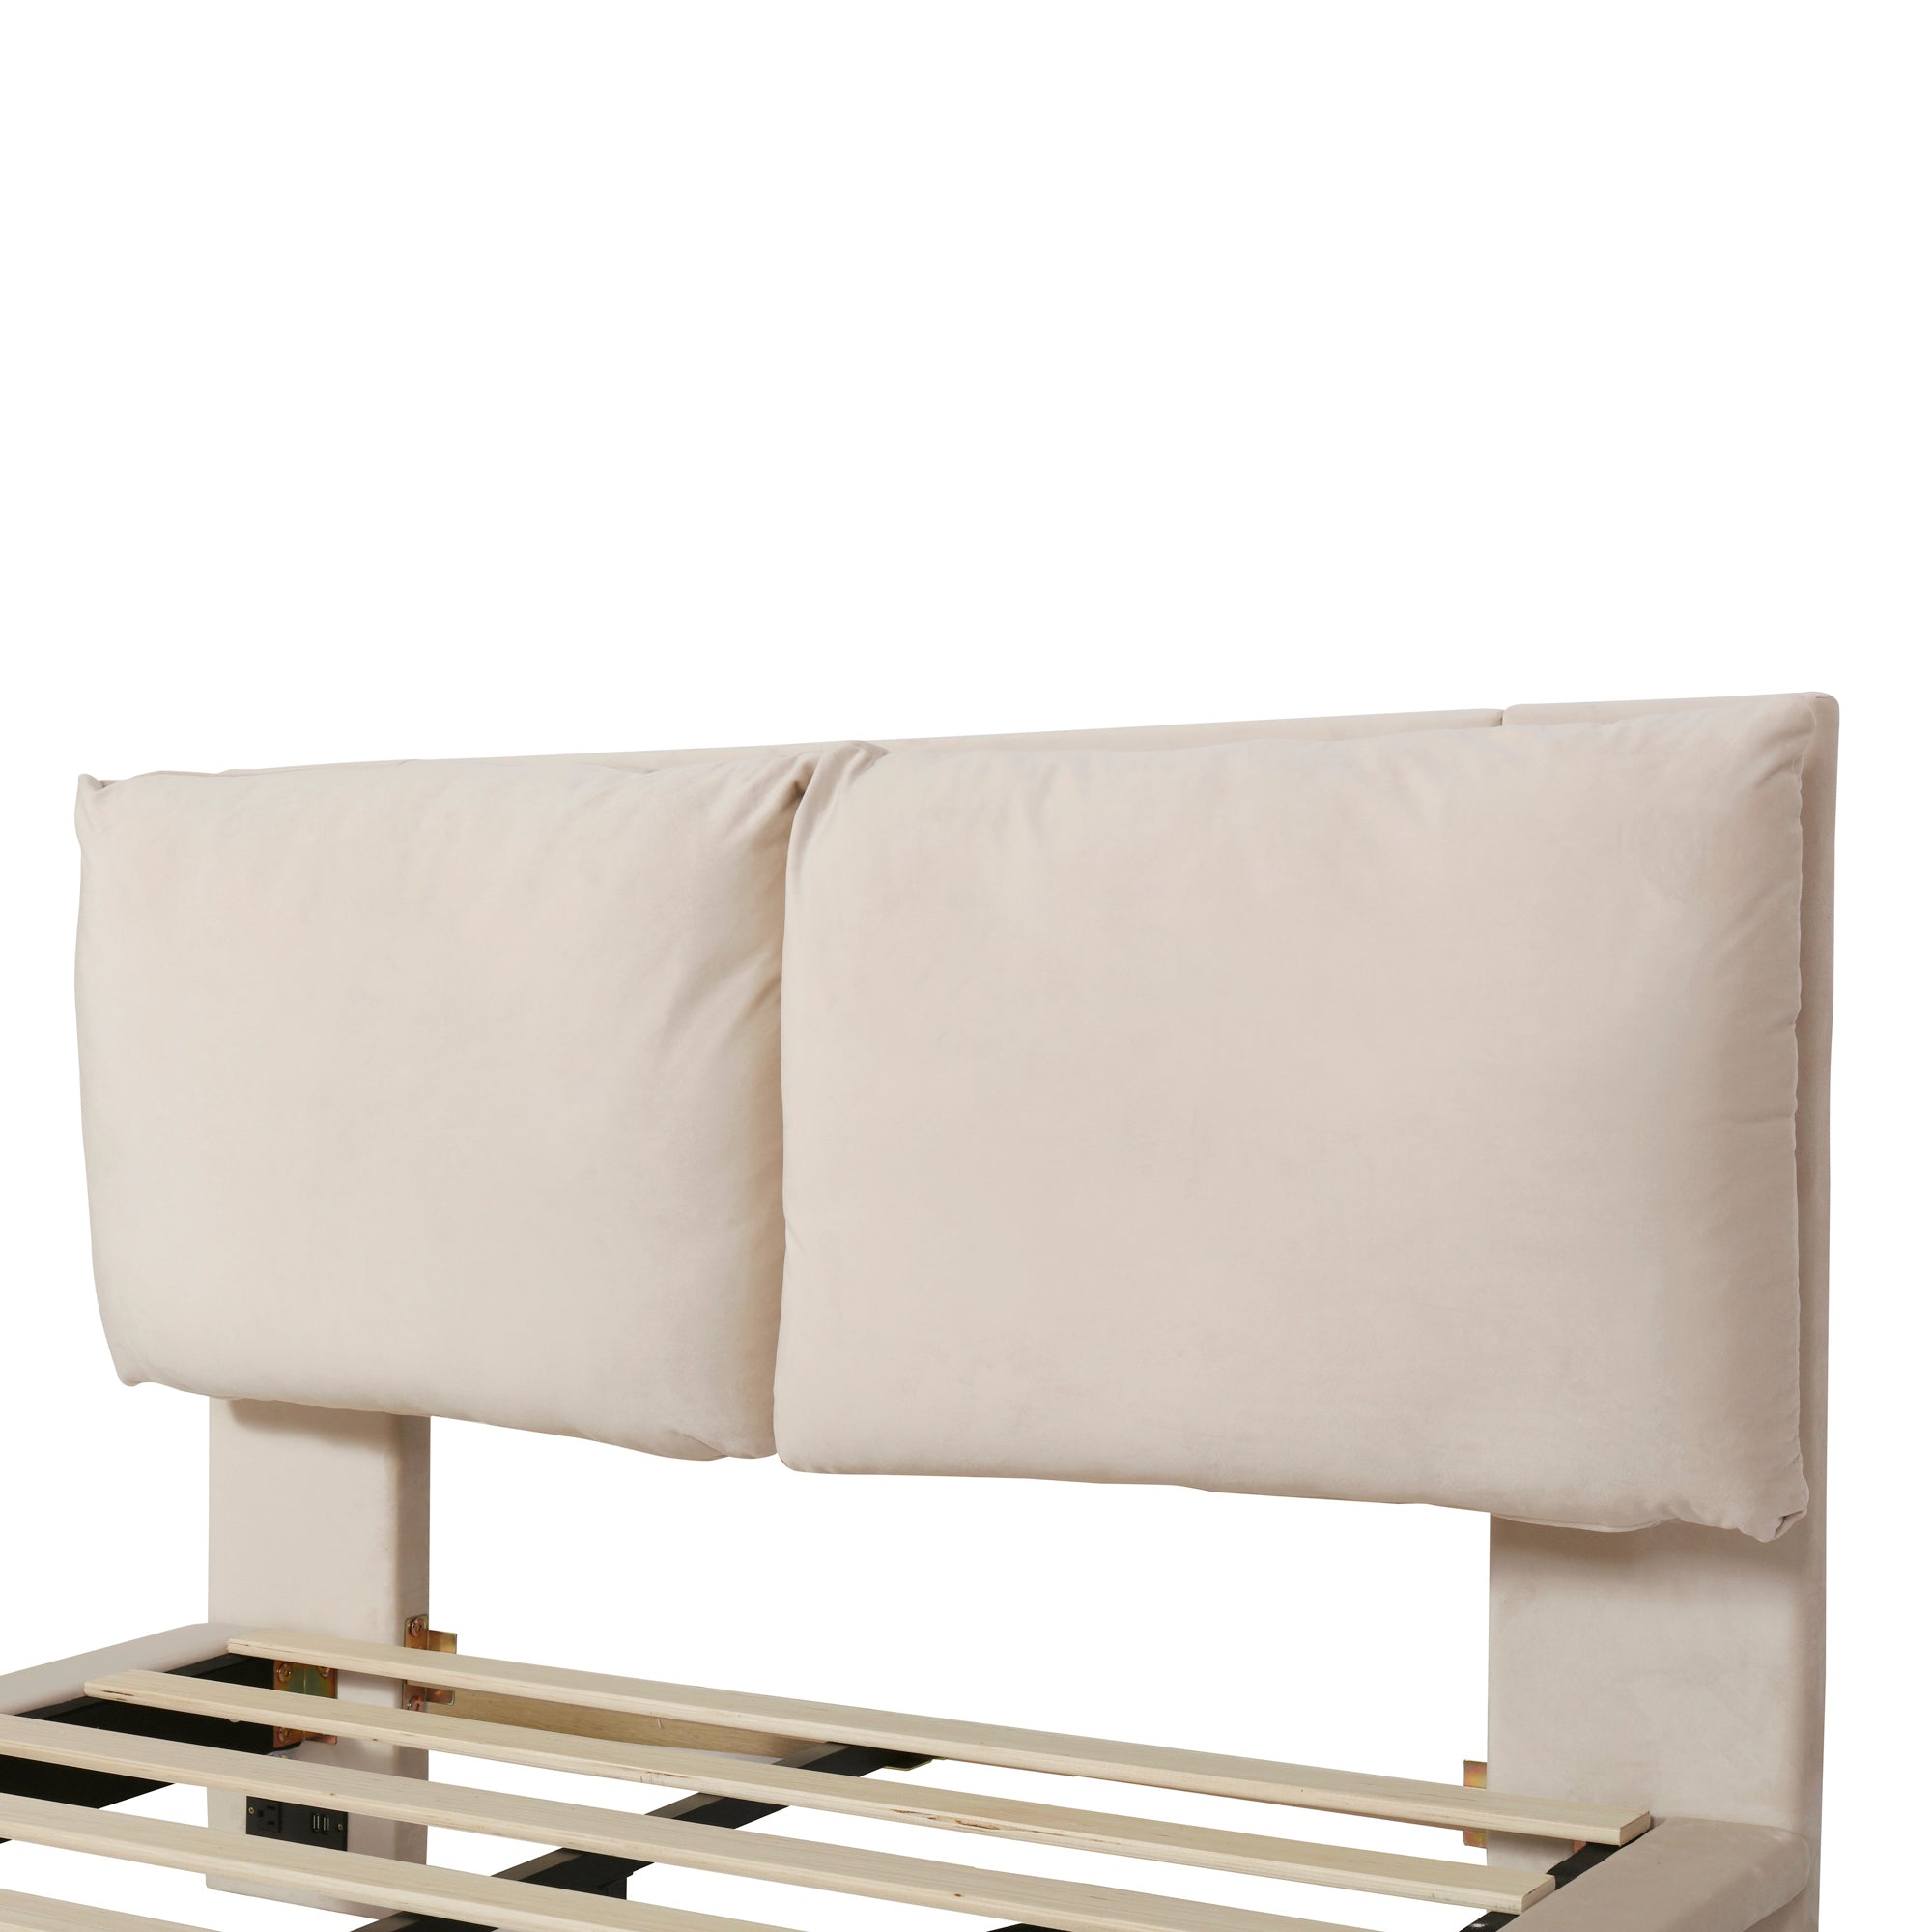 Bellemave® Upholstered Platform Bed with Sensor Light and 2 Large Backrests, 2 sets of USB Port and Socket on each rear Bed Leg Bellemave®